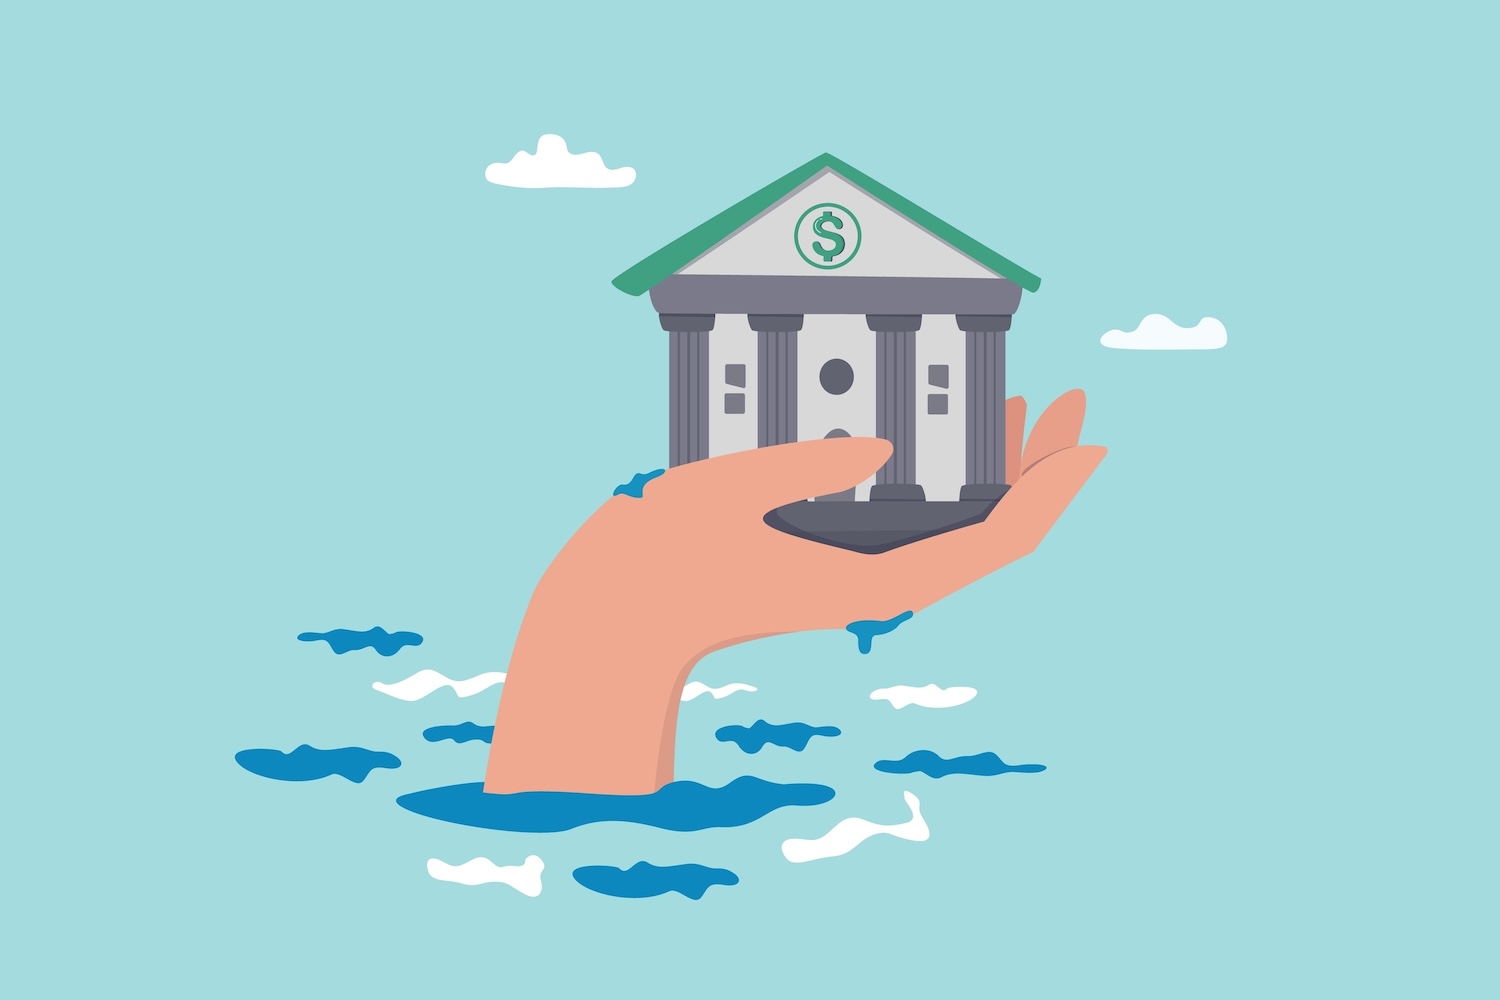 Une grande main émerge de l’eau, tenant un bâtiment bancaire avec un signe dollar dessus, symbolisant un soutien financier ou un plan de sauvetage.